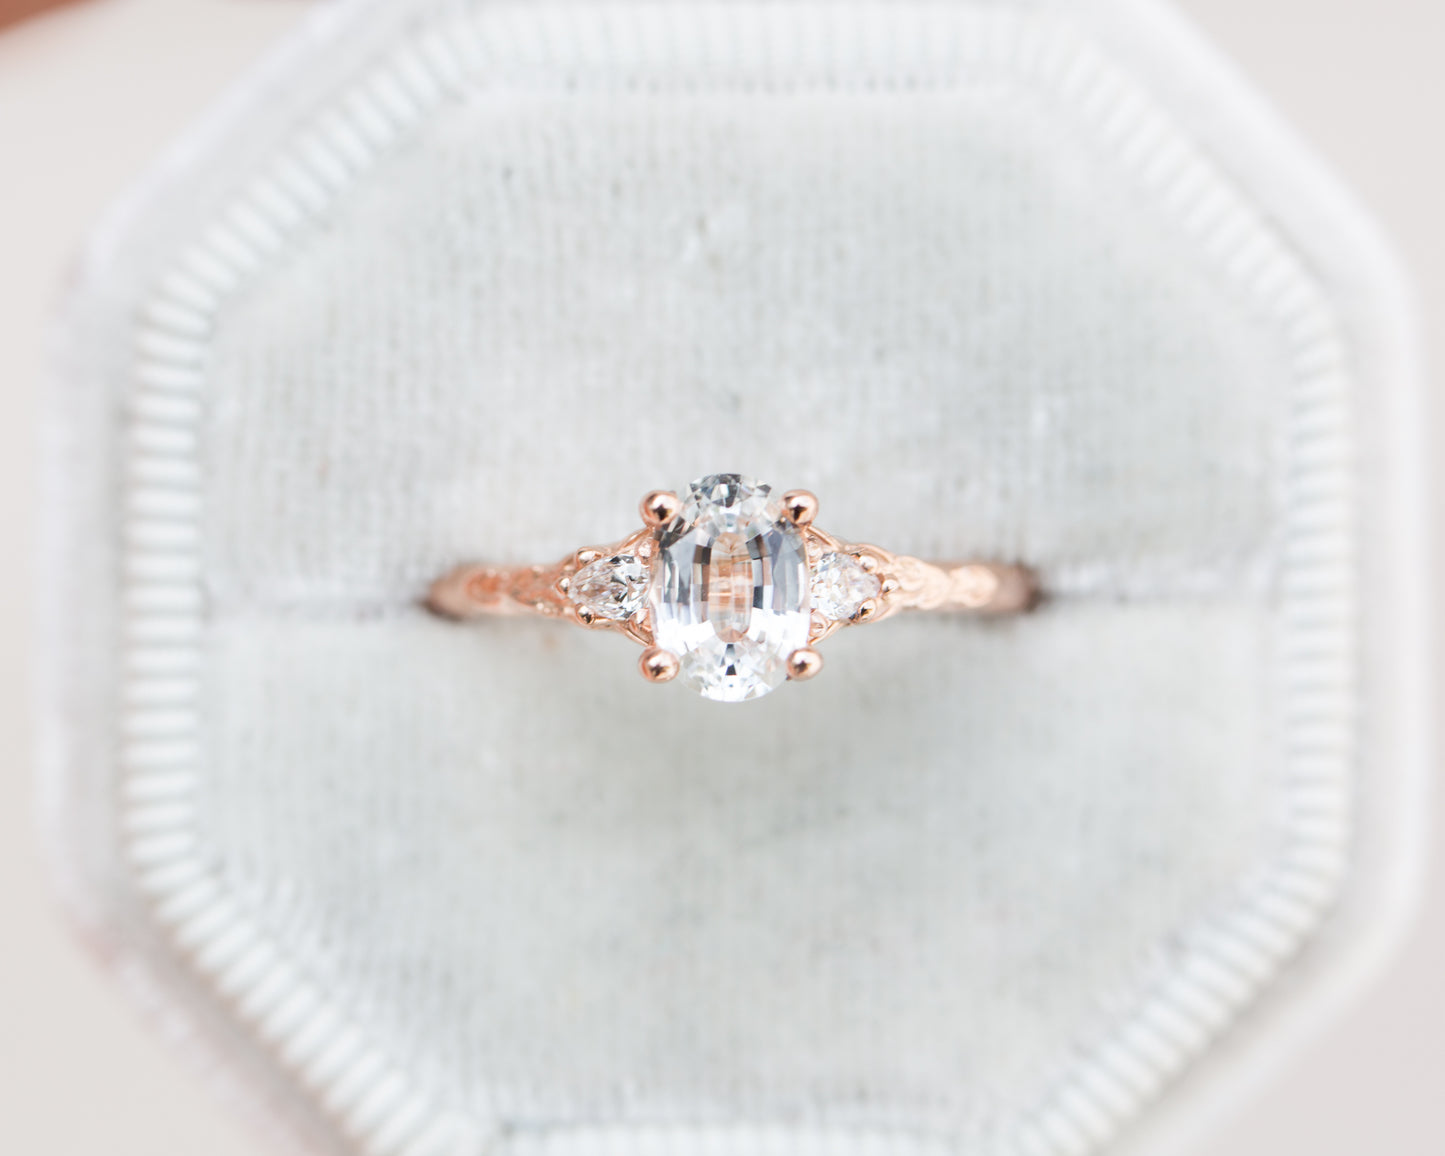 Vintage White Sapphire Ring Set Sterling Silver Diamond Engagement Ring for  Women Promise Ring September Birthstone Anniversary Gift for Her - Etsy